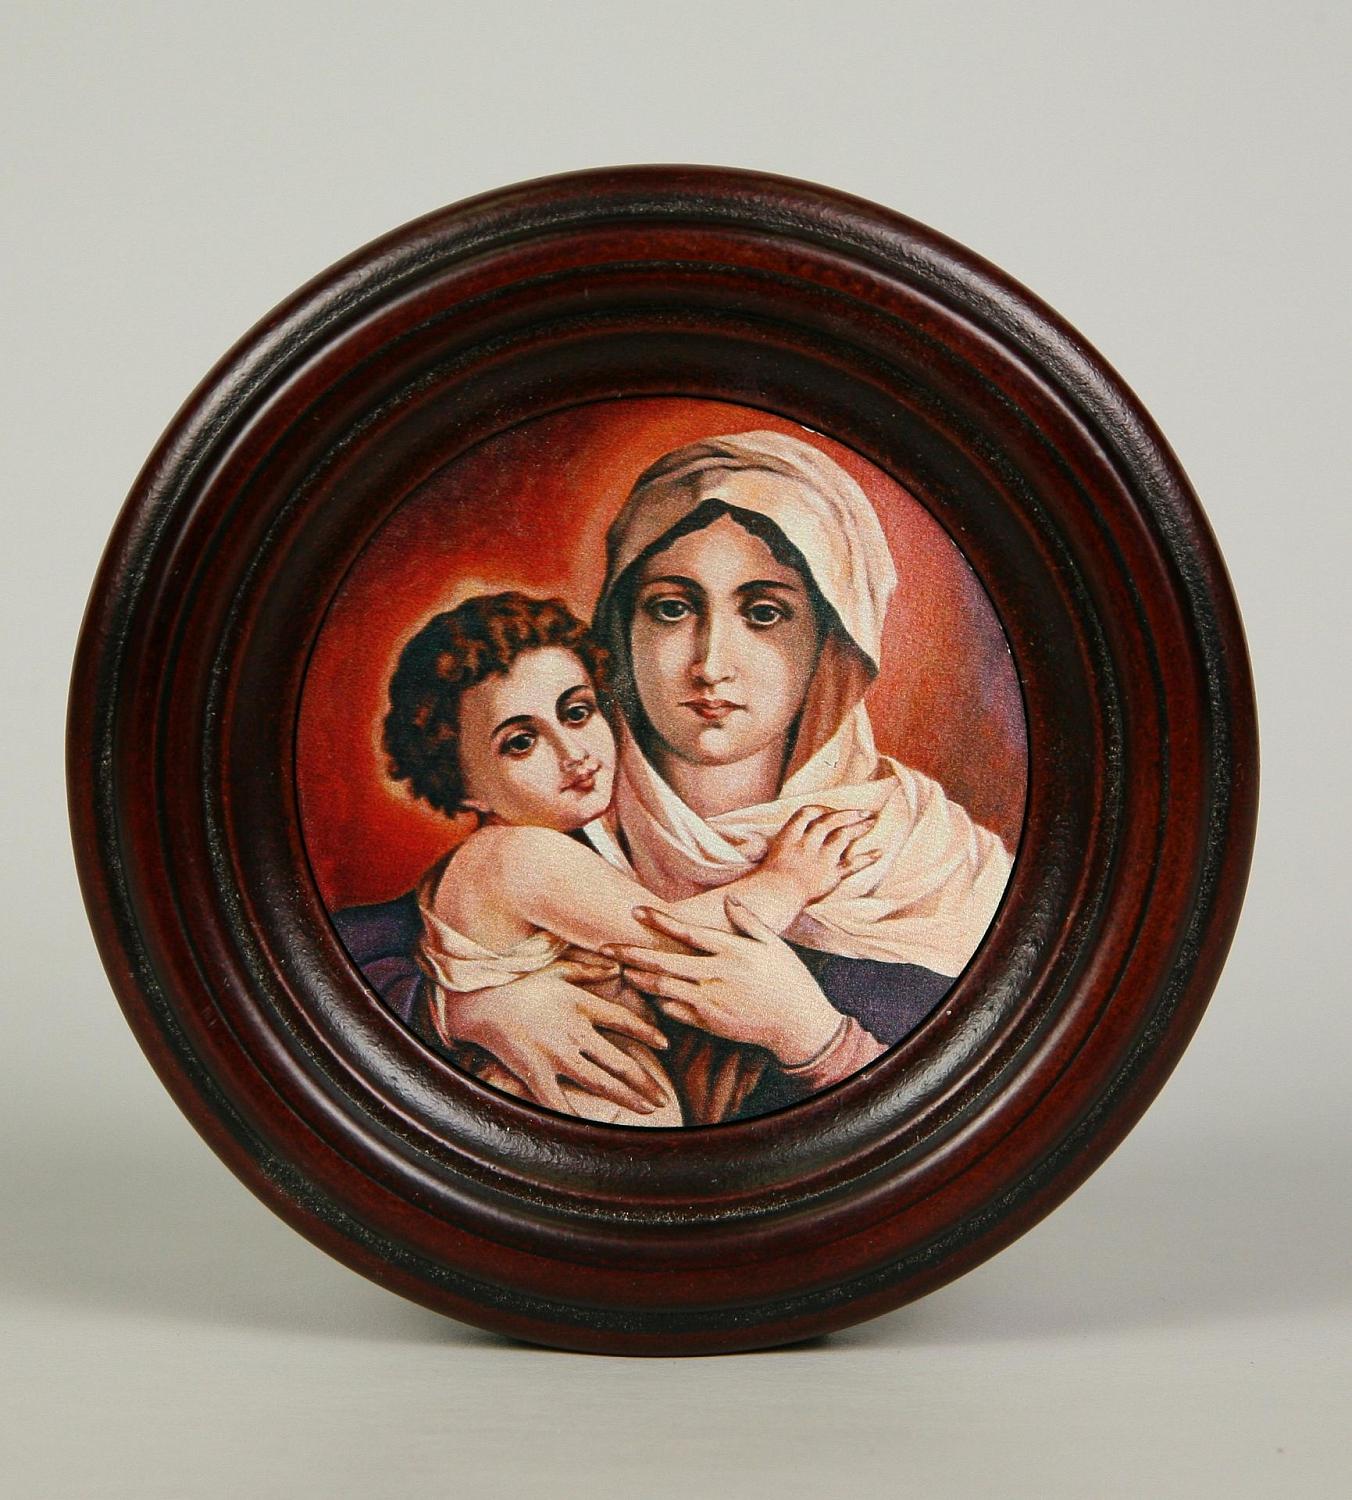 Икона "Святая Дева Мария с младенцем" в резной рамке, 15 х 15